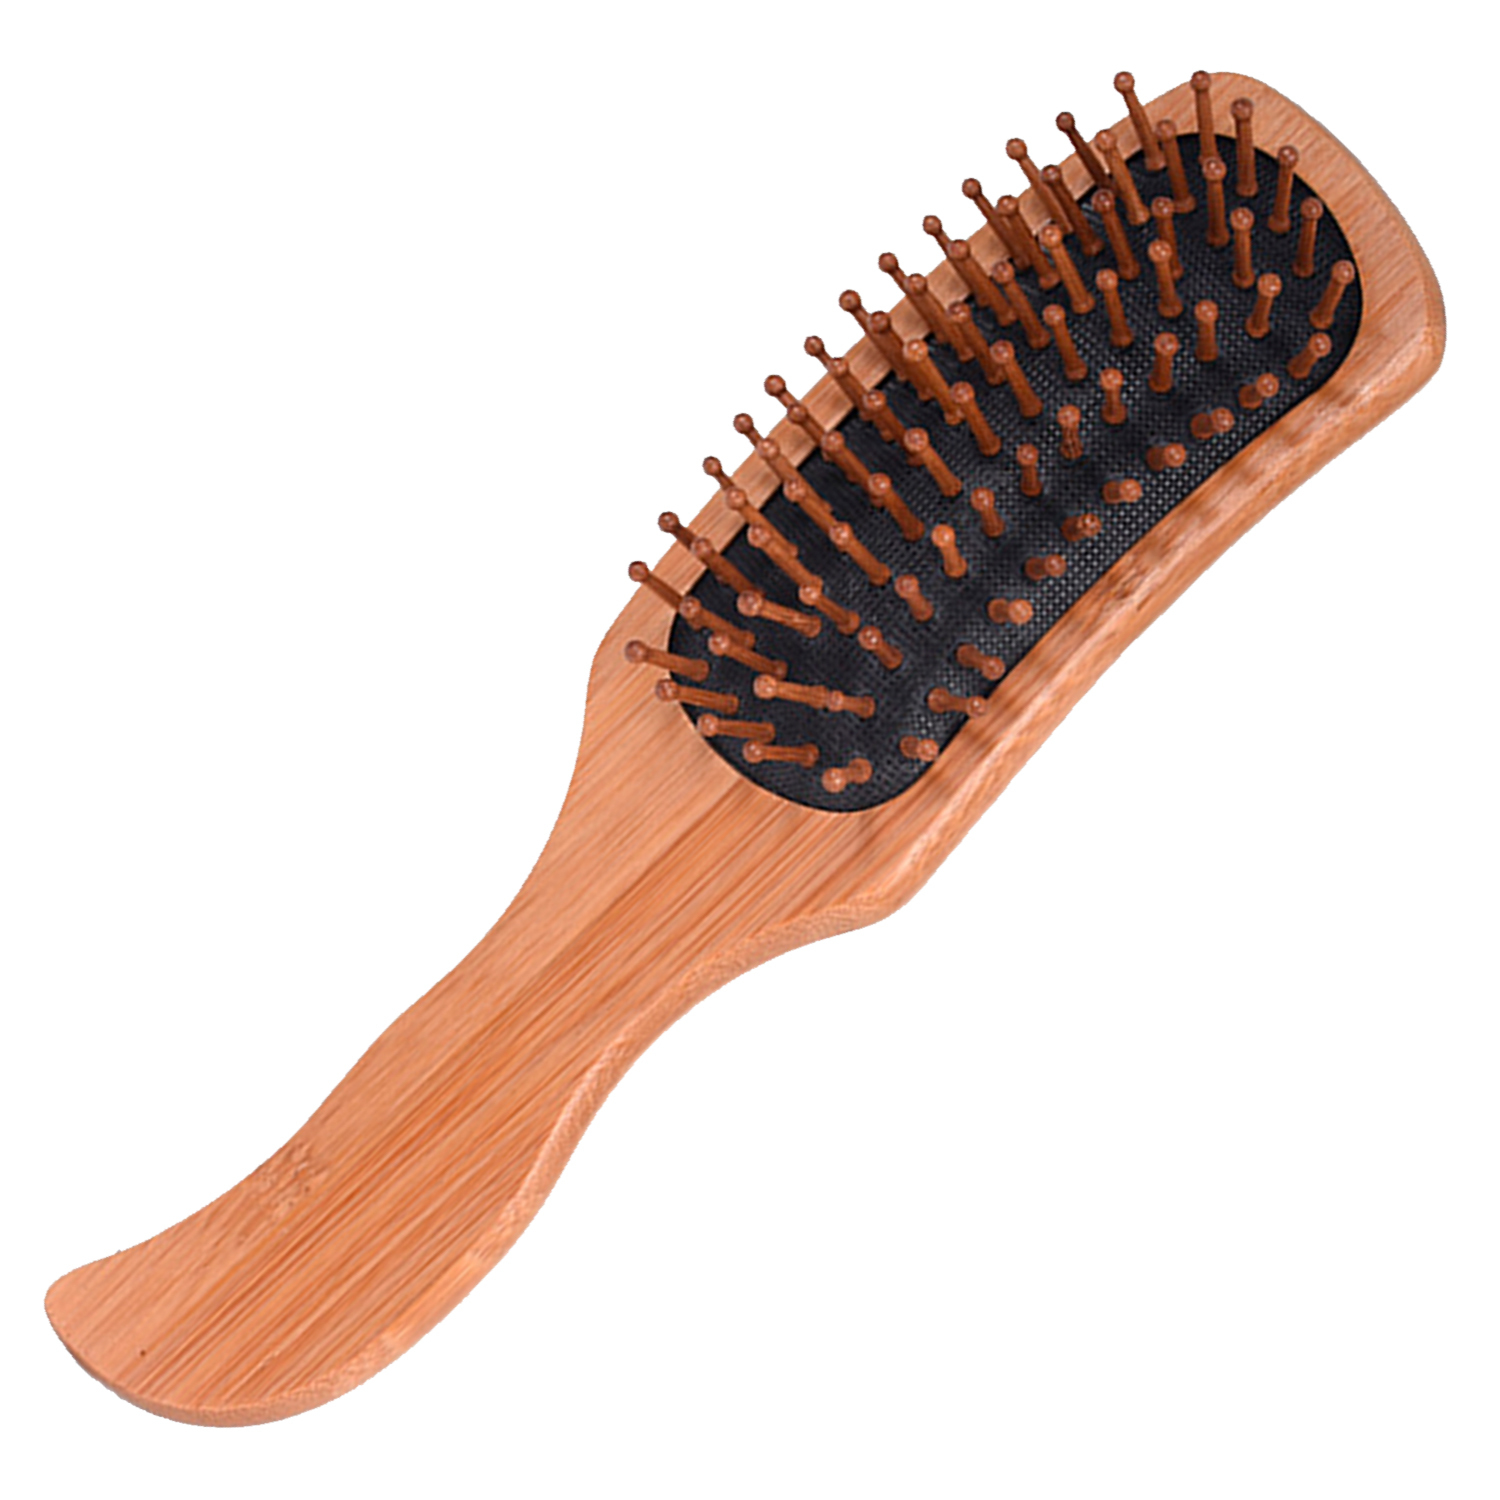 Массажная щетка для волос VenusShape расческа из натурального дерева, 25x8,5 см lei массажер гуаша из натурального дерева малый